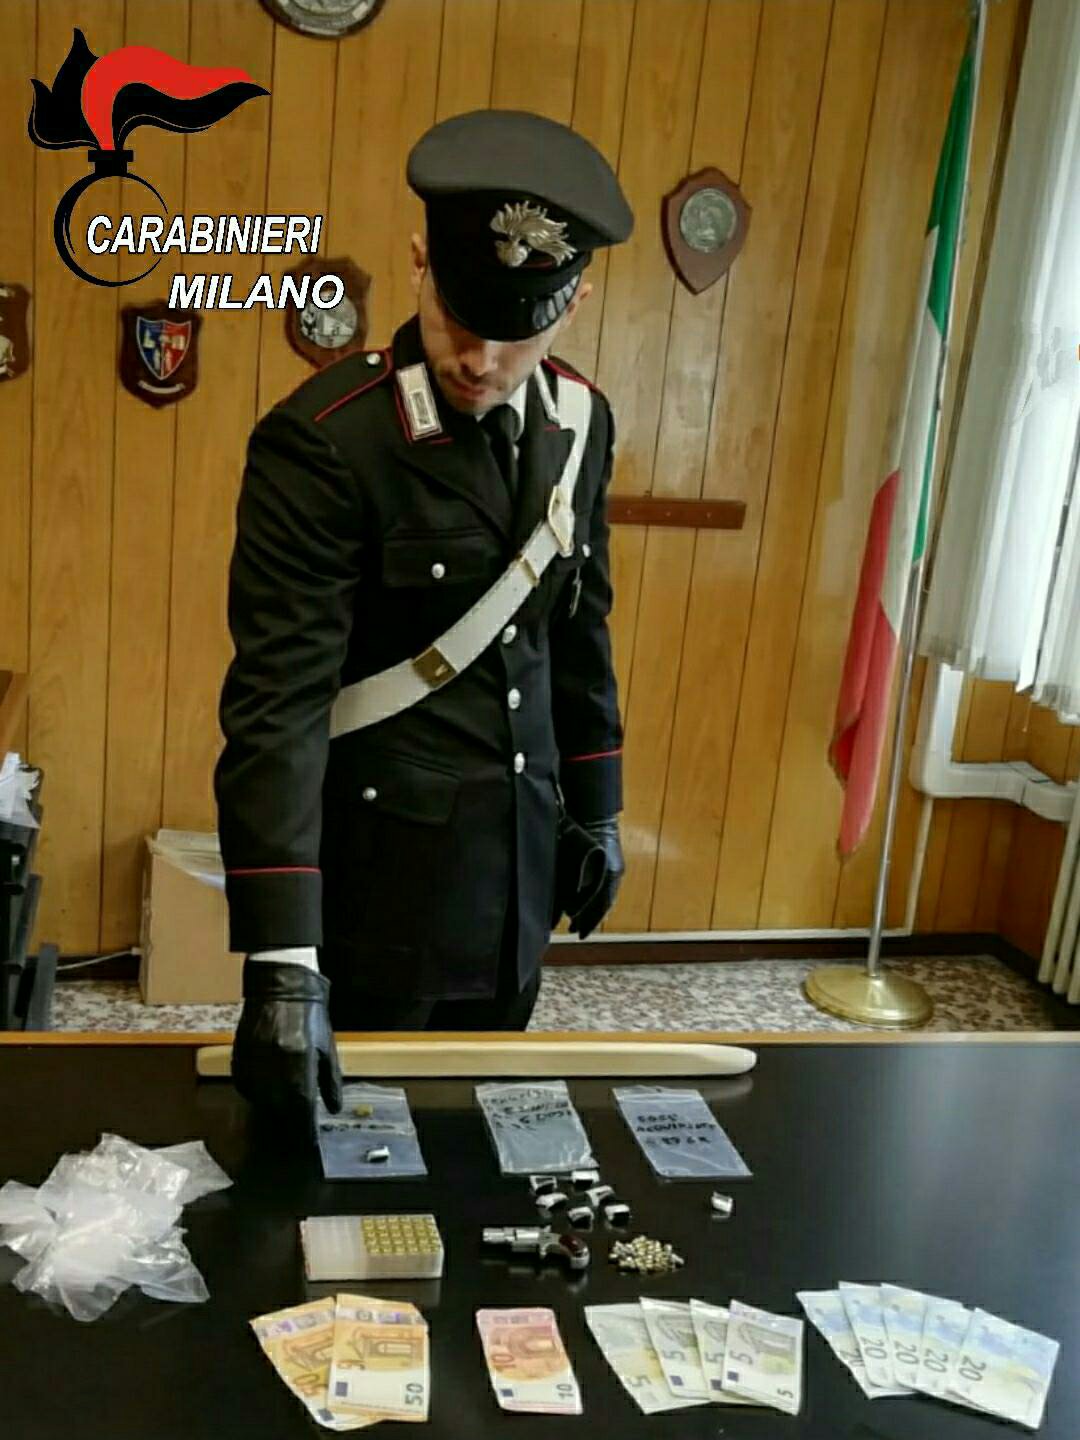 Cinisello Balsamo Sant'Eusebio. Cinisello Balsamo sant'Eusebio. Spacciava droga con mazze e pistole - 05/05/2020